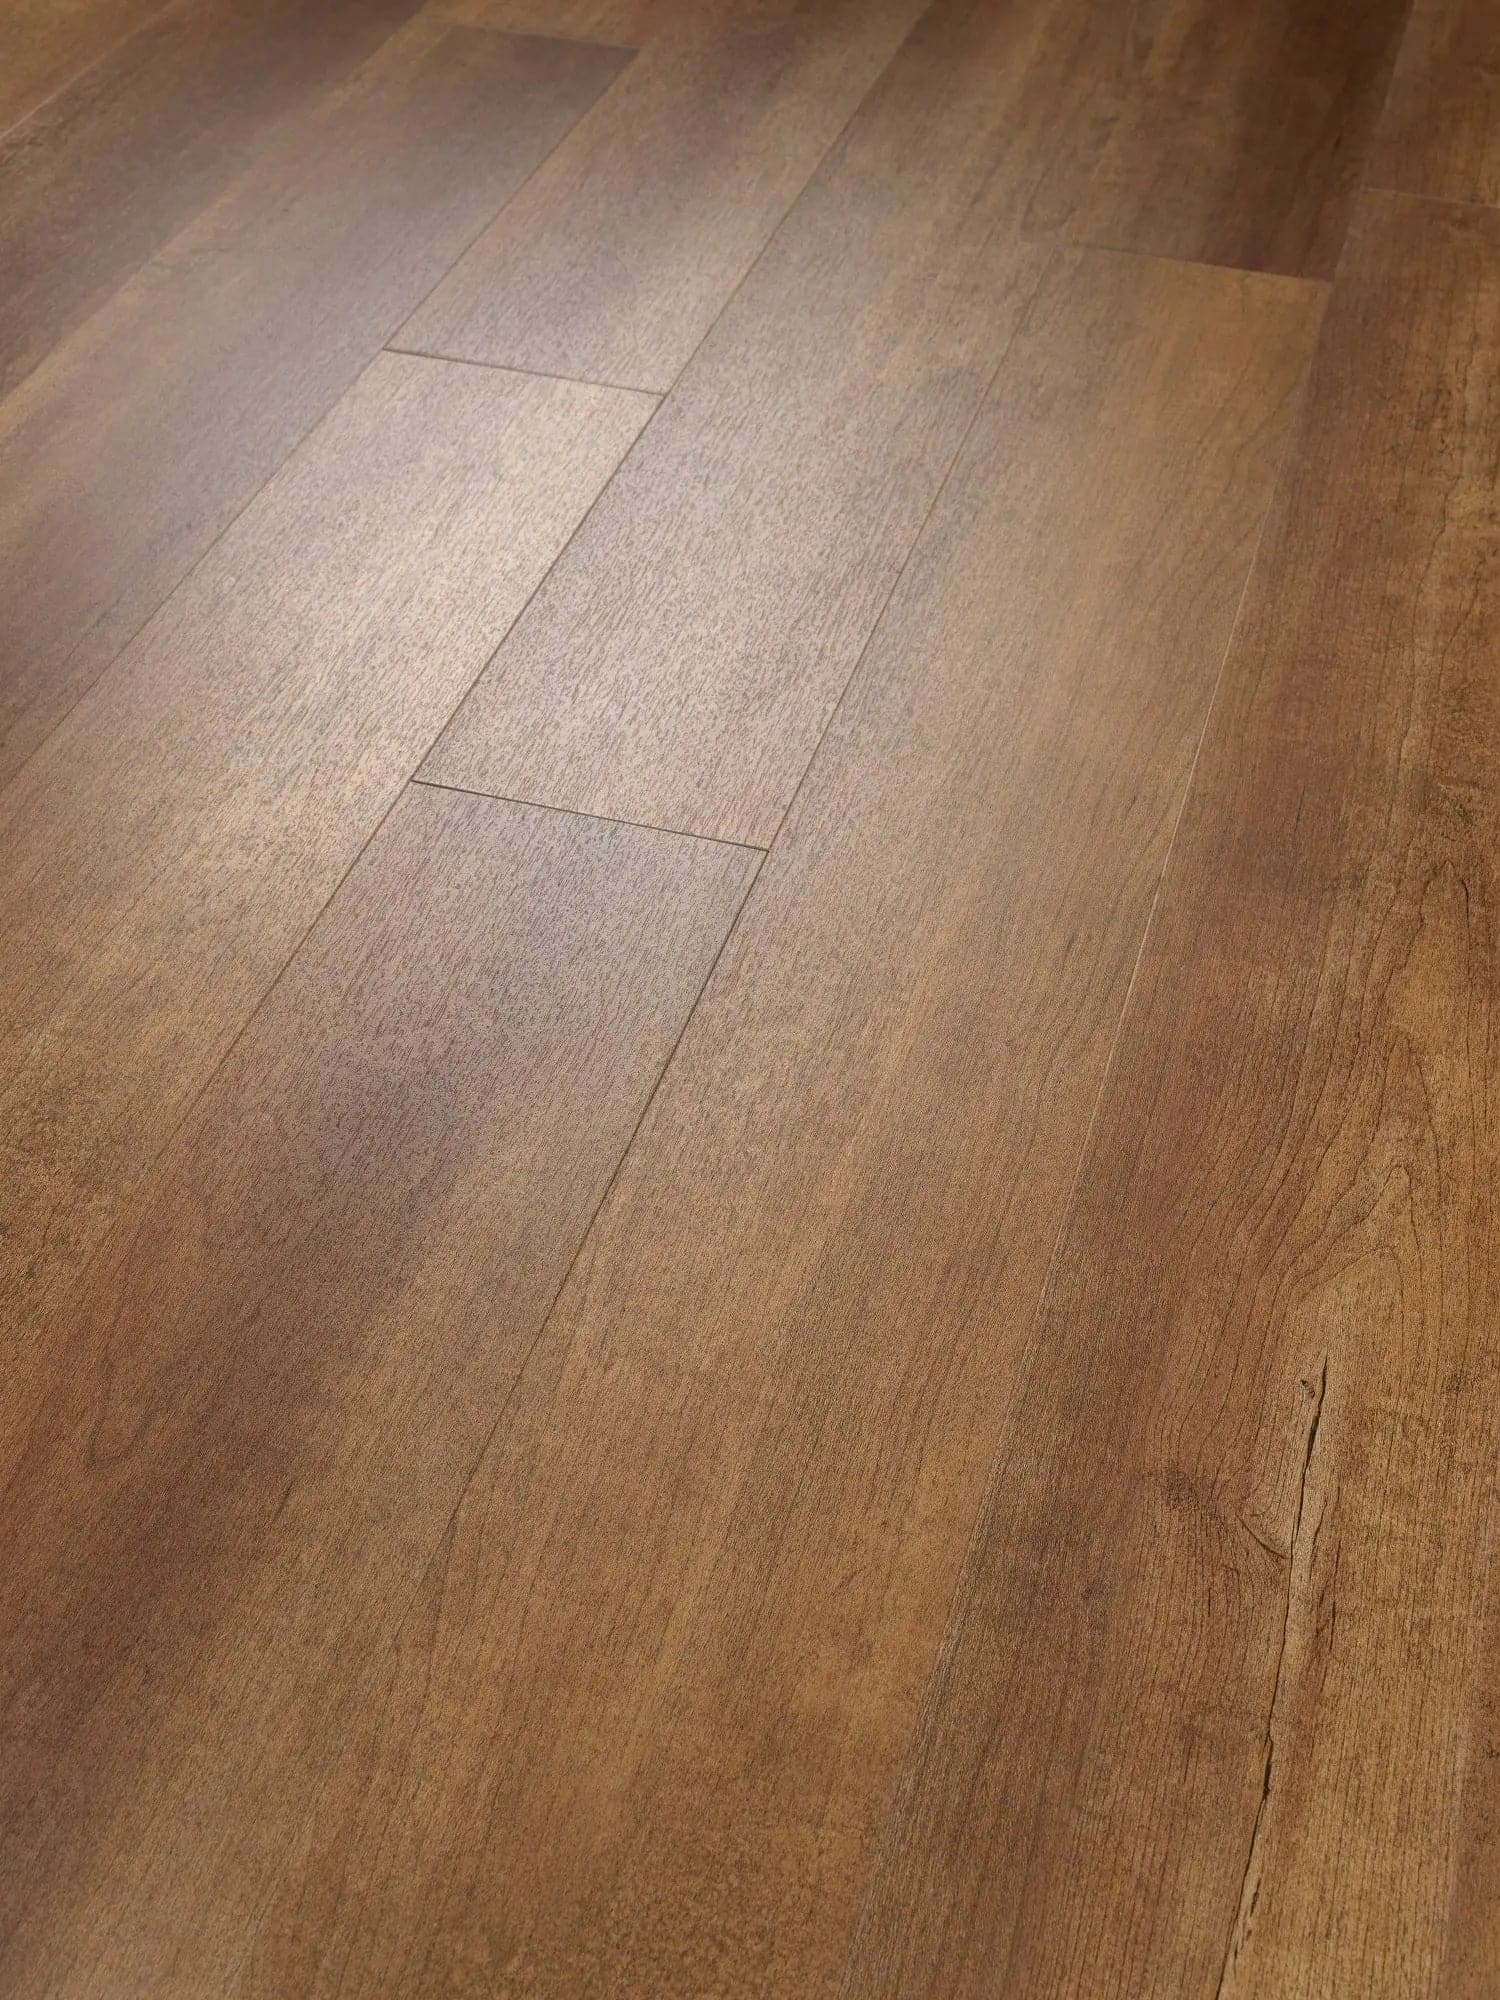 SUPERCore Maple Brown Sugar Waterproof Rigid Plank Flooring supercorefloors